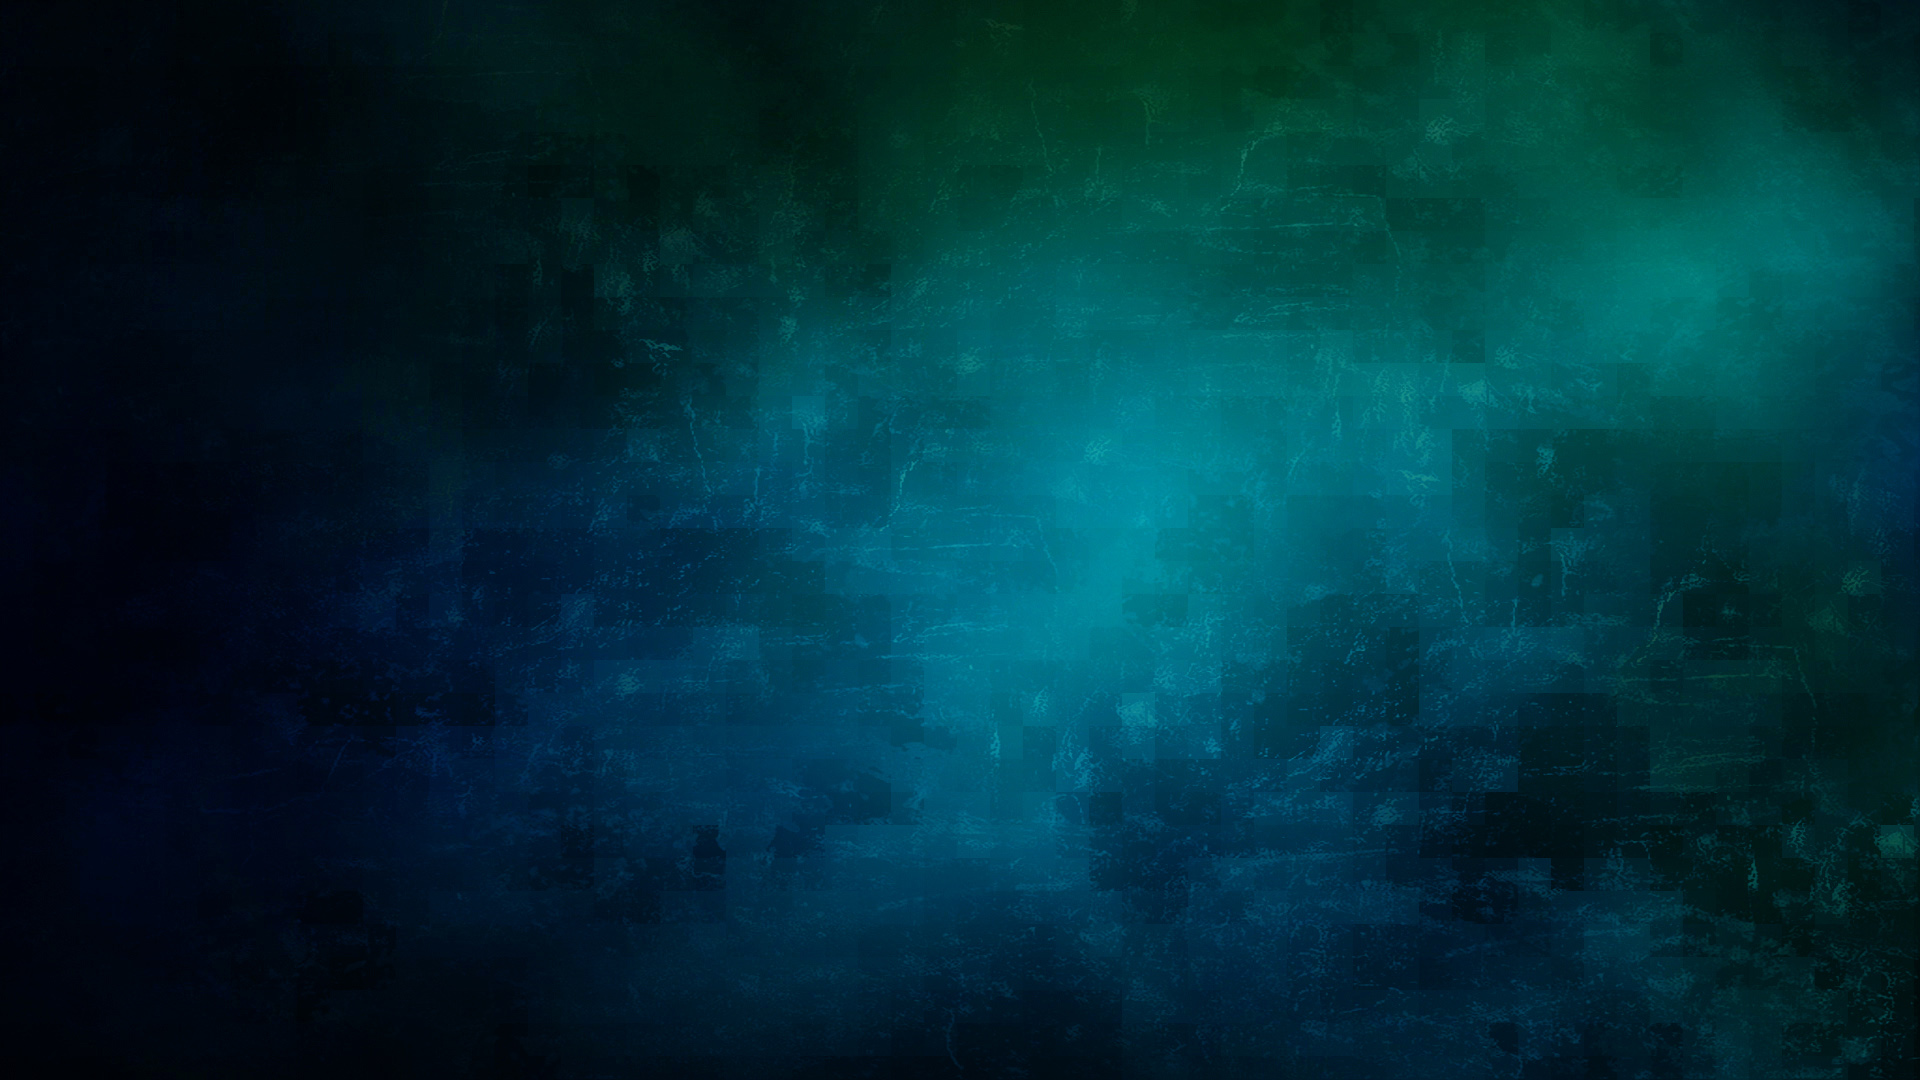 ubuntu gnome fond d'écran,bleu,noir,la nature,vert,atmosphère